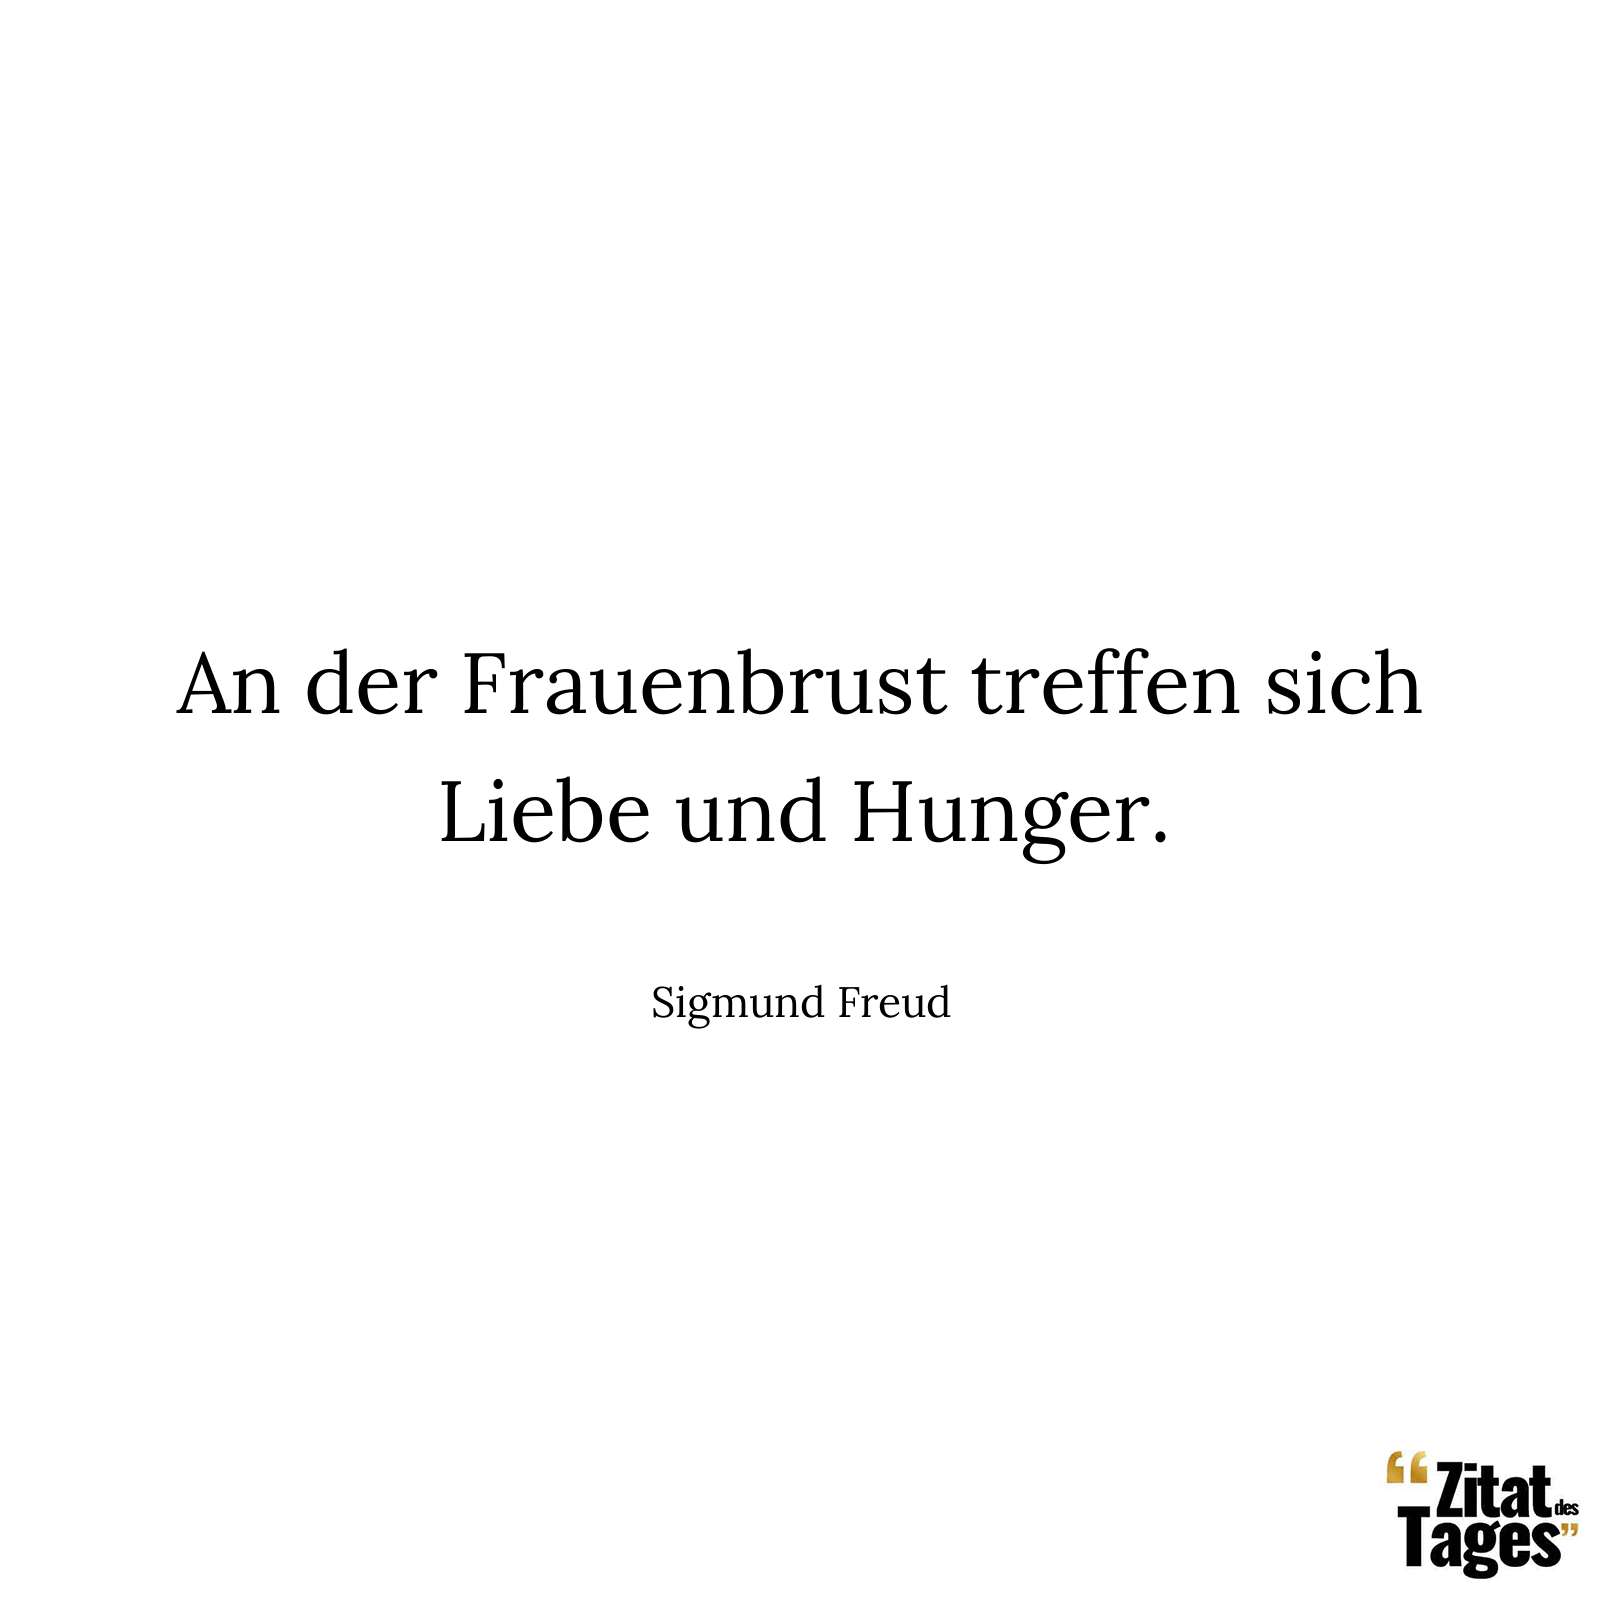 An der Frauenbrust treffen sich Liebe und Hunger. - Sigmund Freud